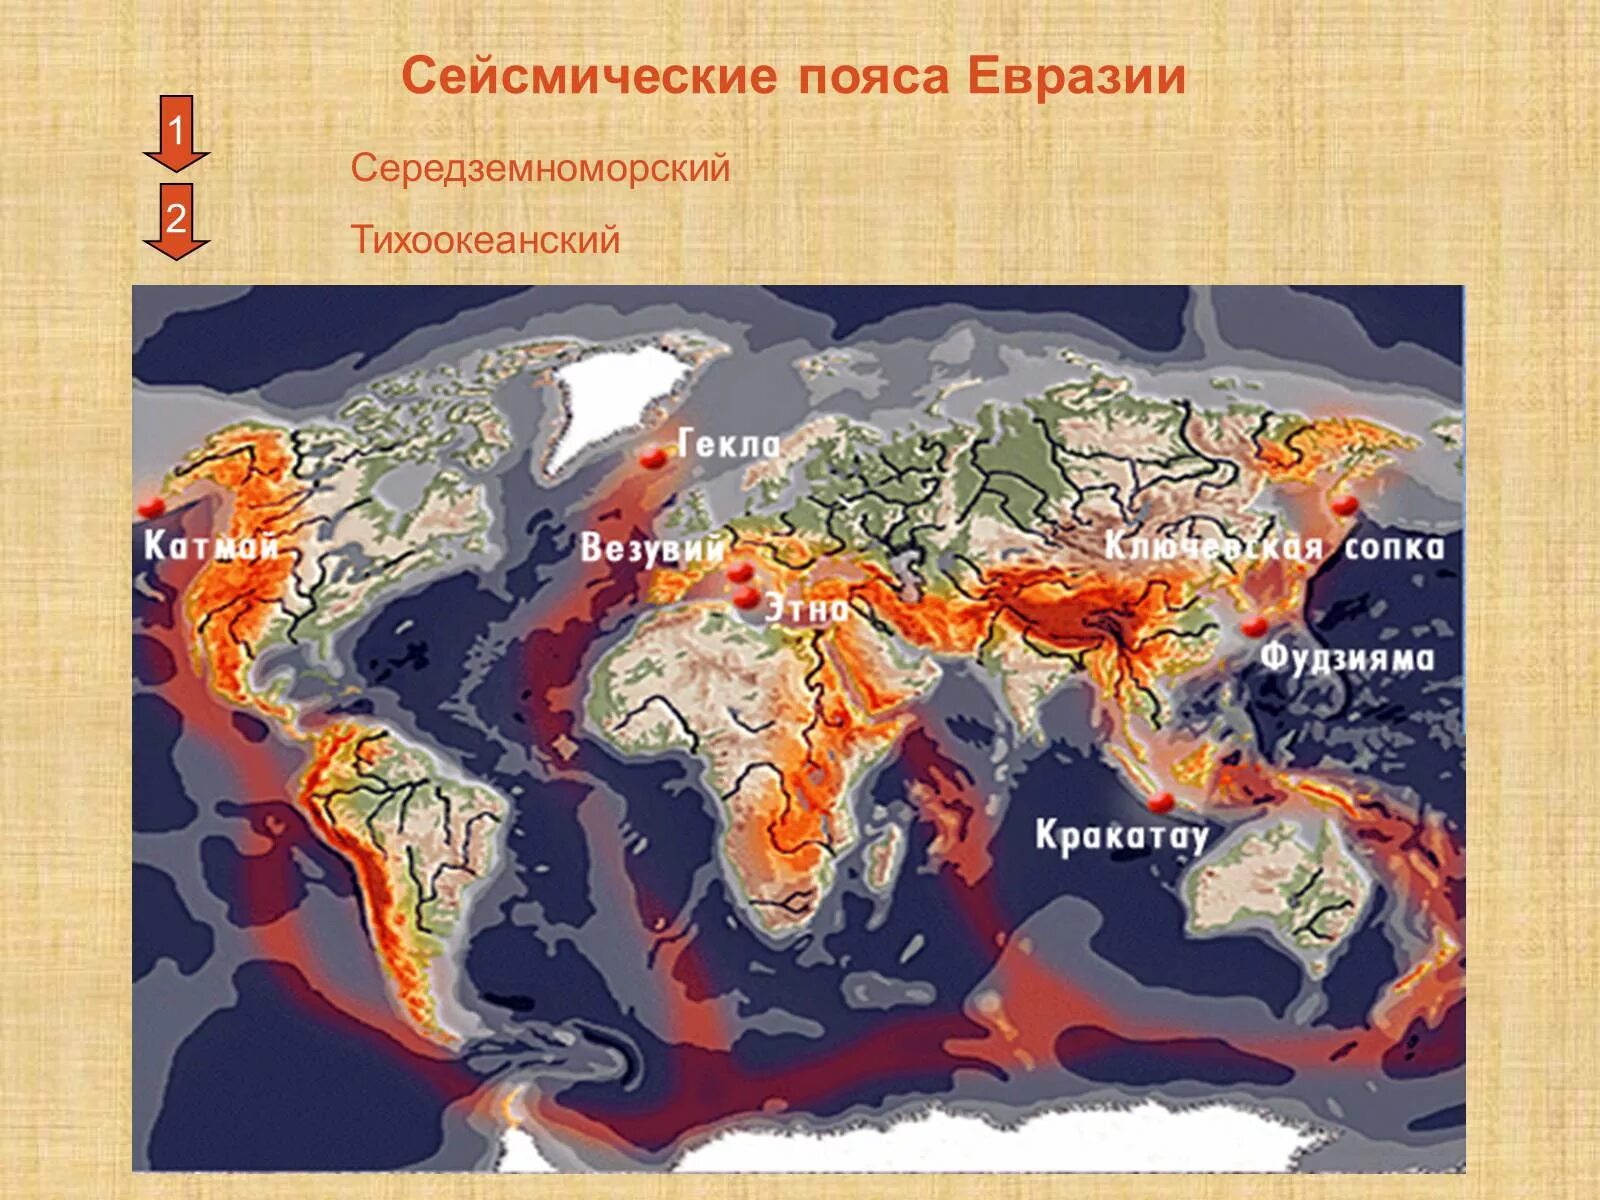 Сейсмоопасные зоны это. Тихоокеанский сейсмический пояс. Зоны сейсмической активности Евразии. Действующие вулканы Евразии на карте.